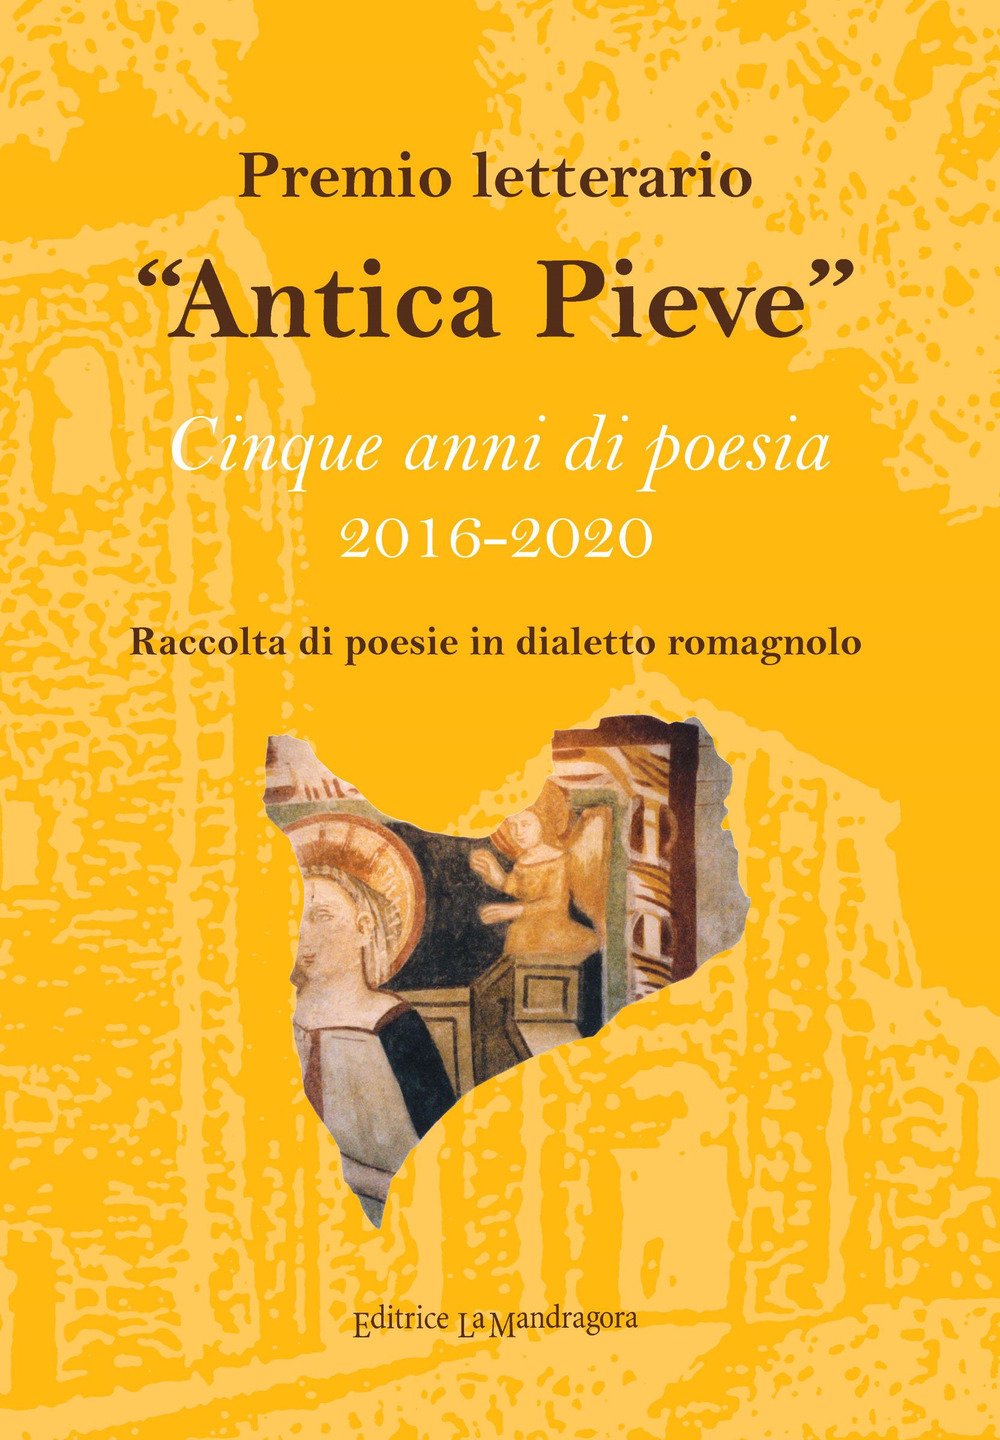 Premio letterario «Antica Pieve». Raccolta di poesie in dialetto romagnolo. Cinque anni di poesia 2016-2020